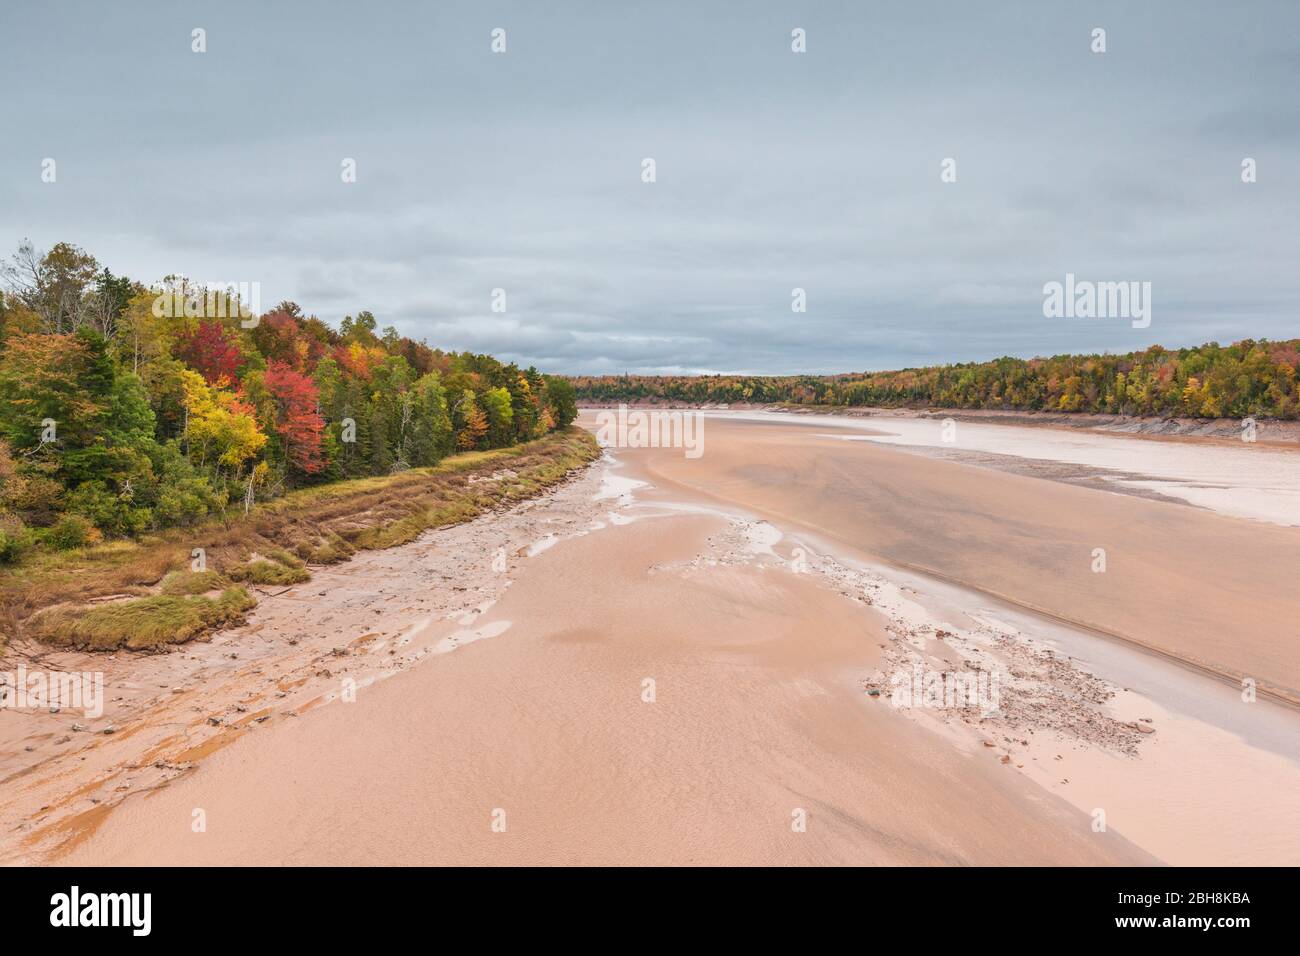 Canada, Nova Scotia, querce verdi, Fundy marea Area interpretativa, vista in elevazione della grande baia di Fundy maree sul fiume Shubenacadie Foto Stock